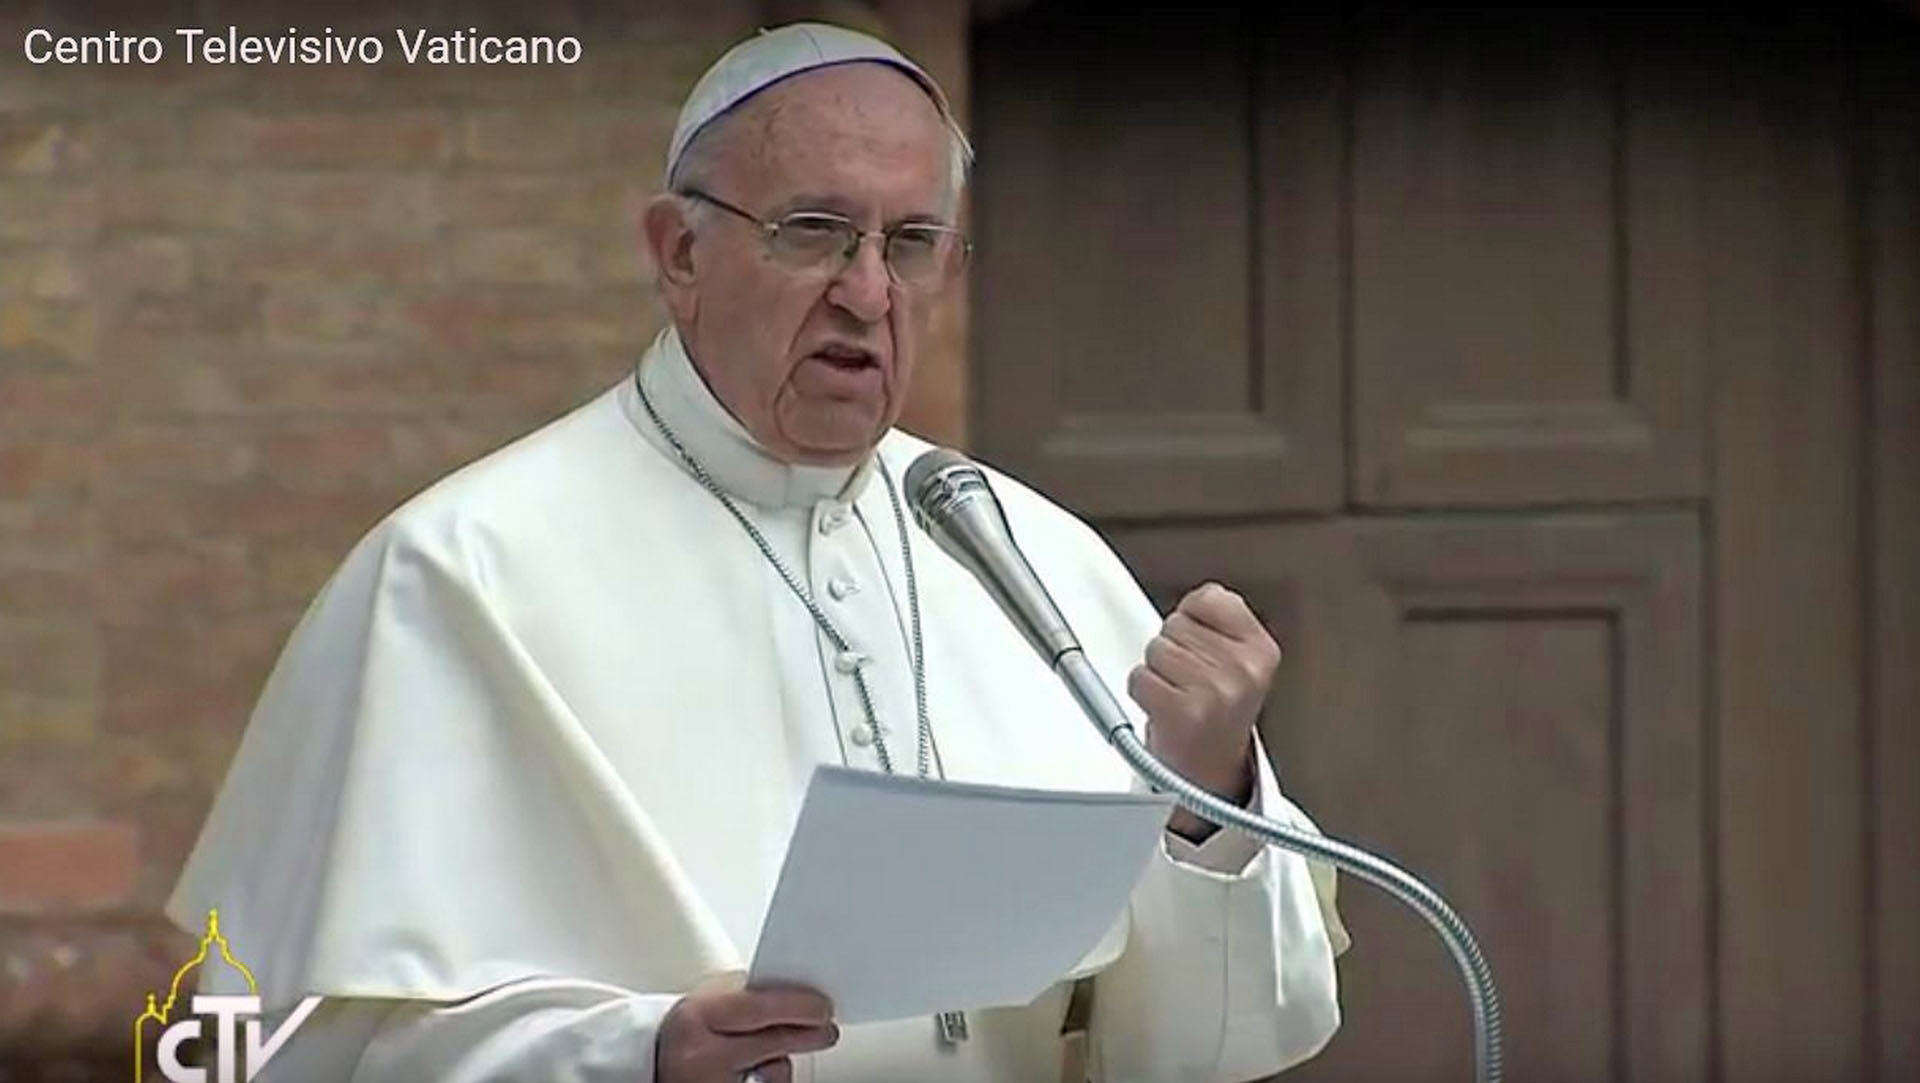 Le pape veut rendorcer la législation du Vatican | capture d'écran CTV